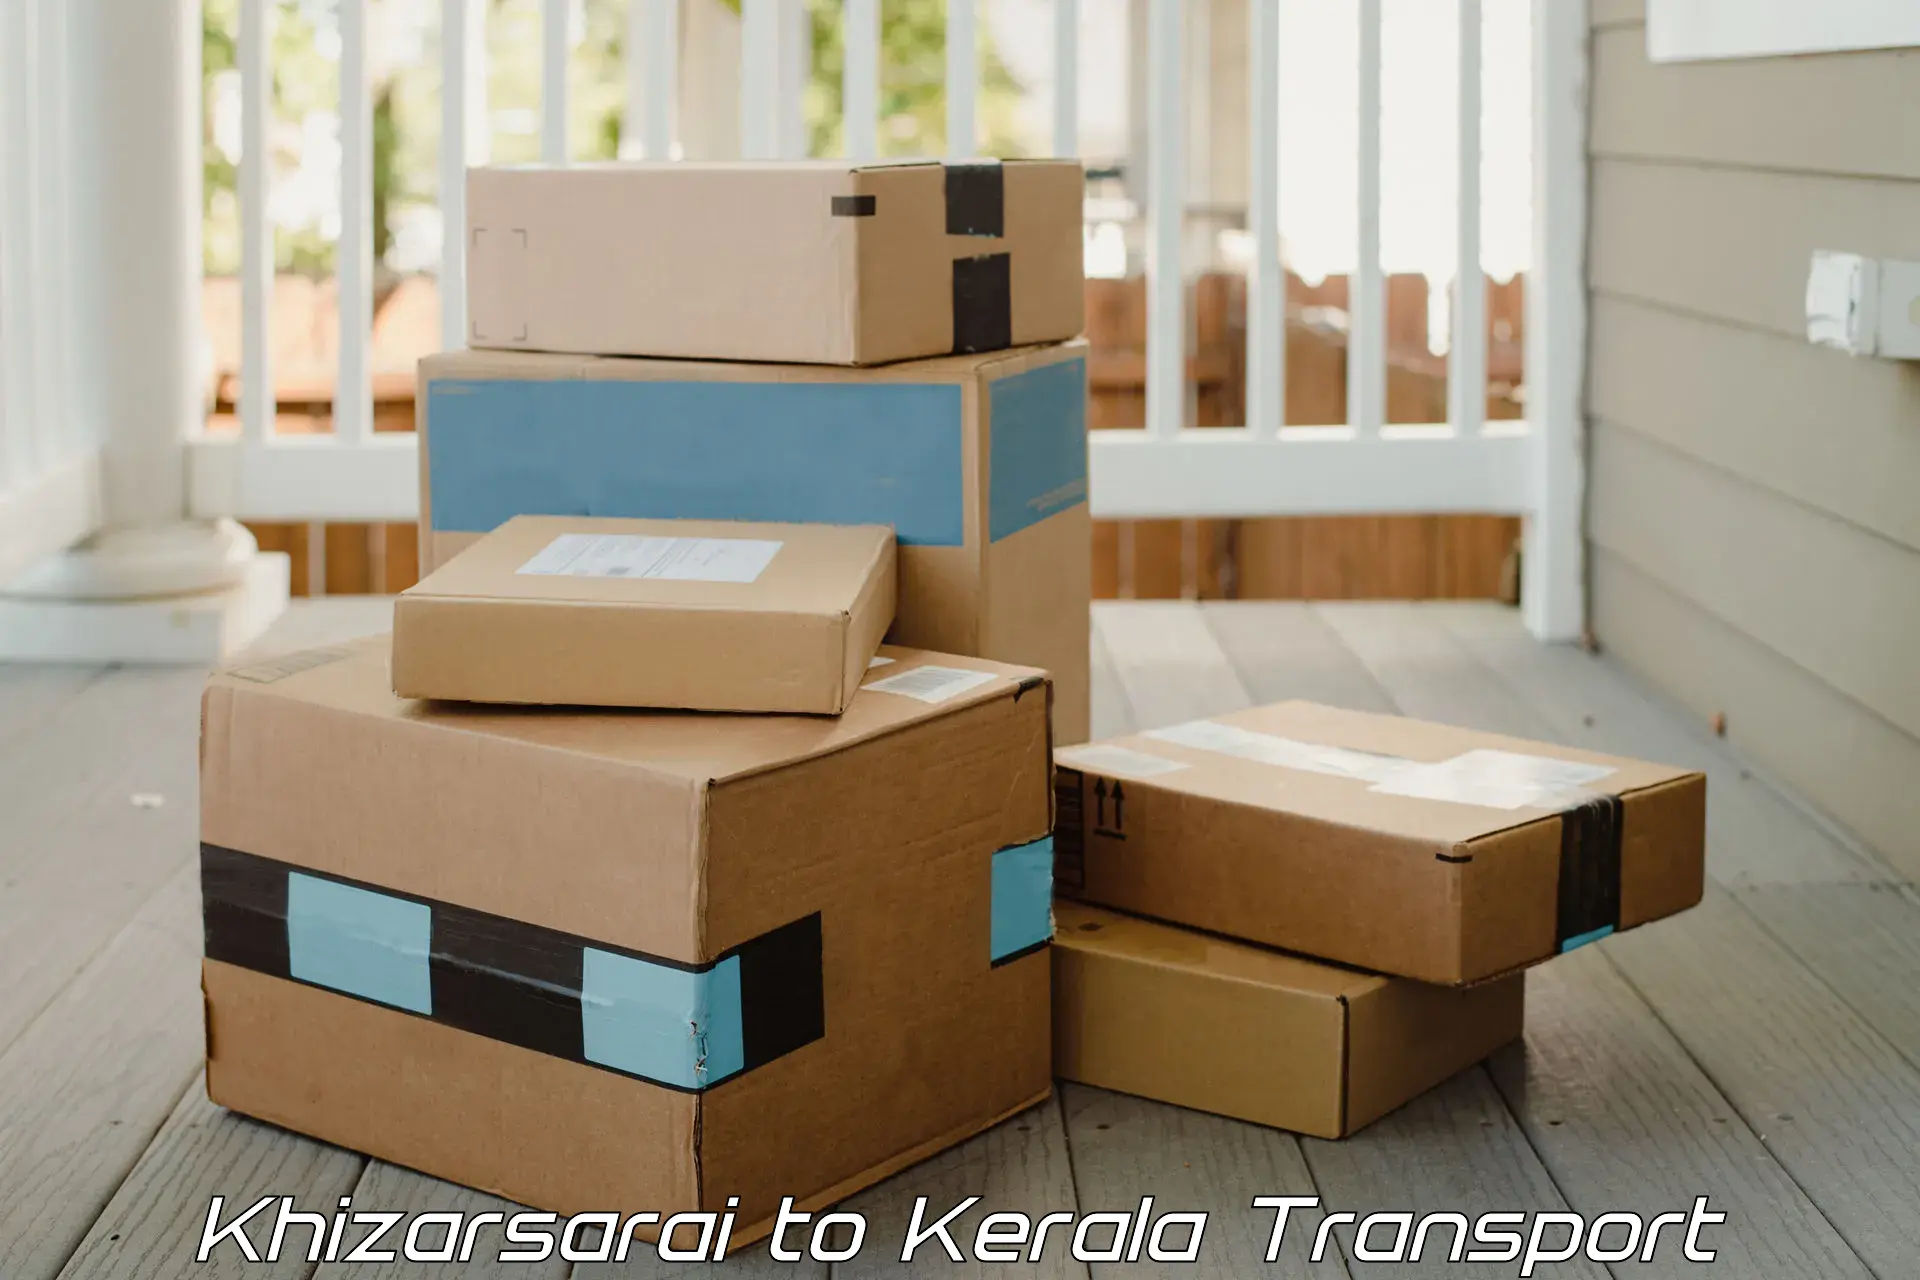 Goods transport services Khizarsarai to Hosdurg